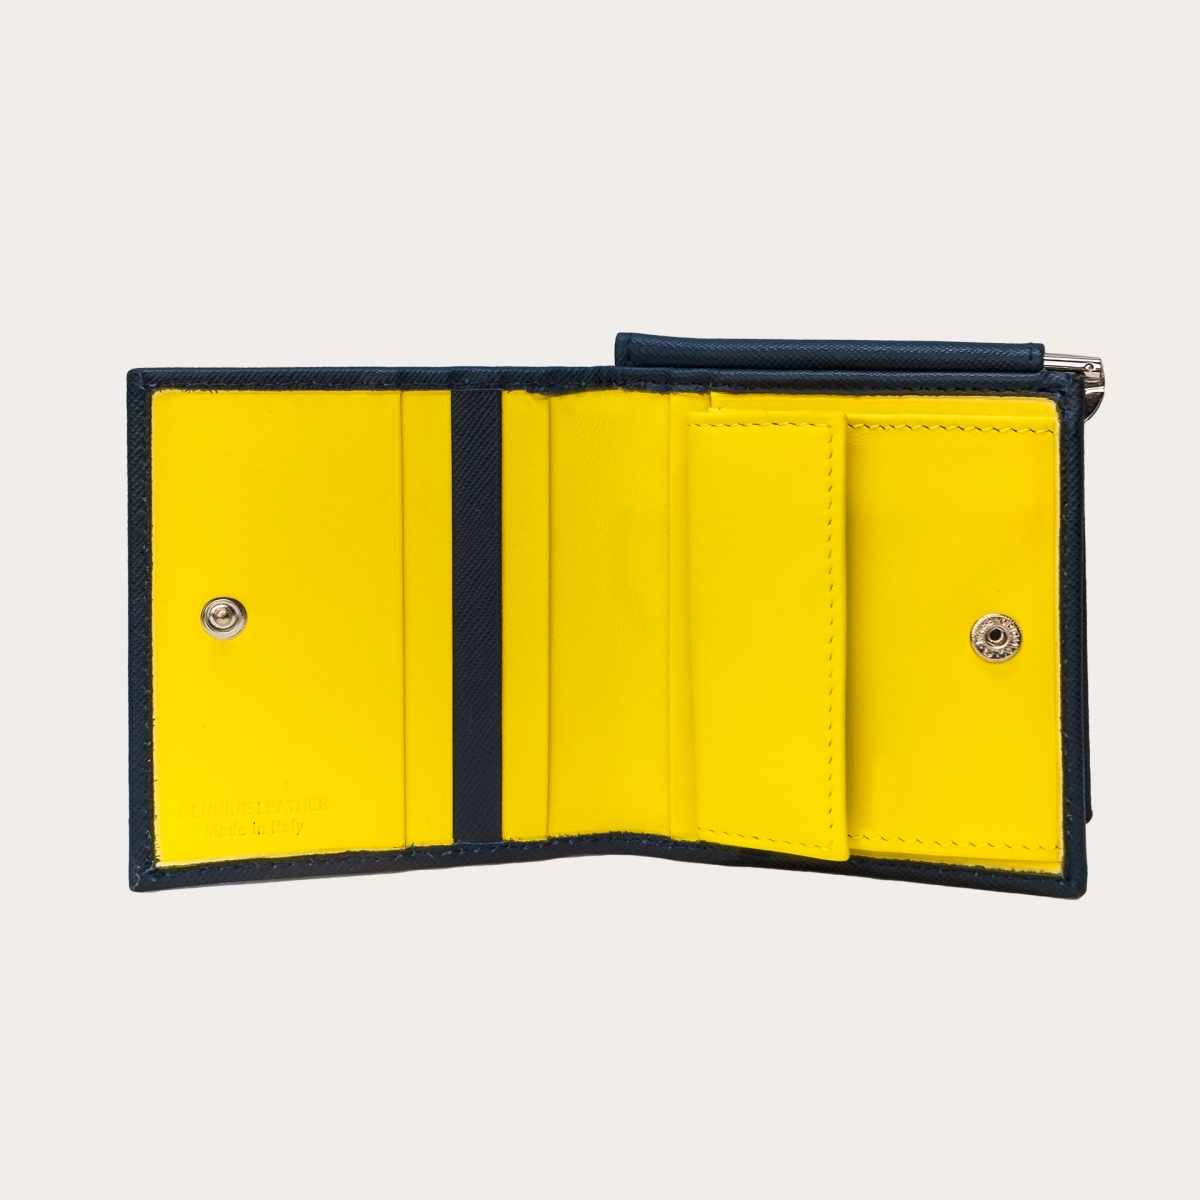 BRUCLE Mini portefeuille compact en cuir saffiano avec pince à billets et porte-monnaie, bleu et jaune